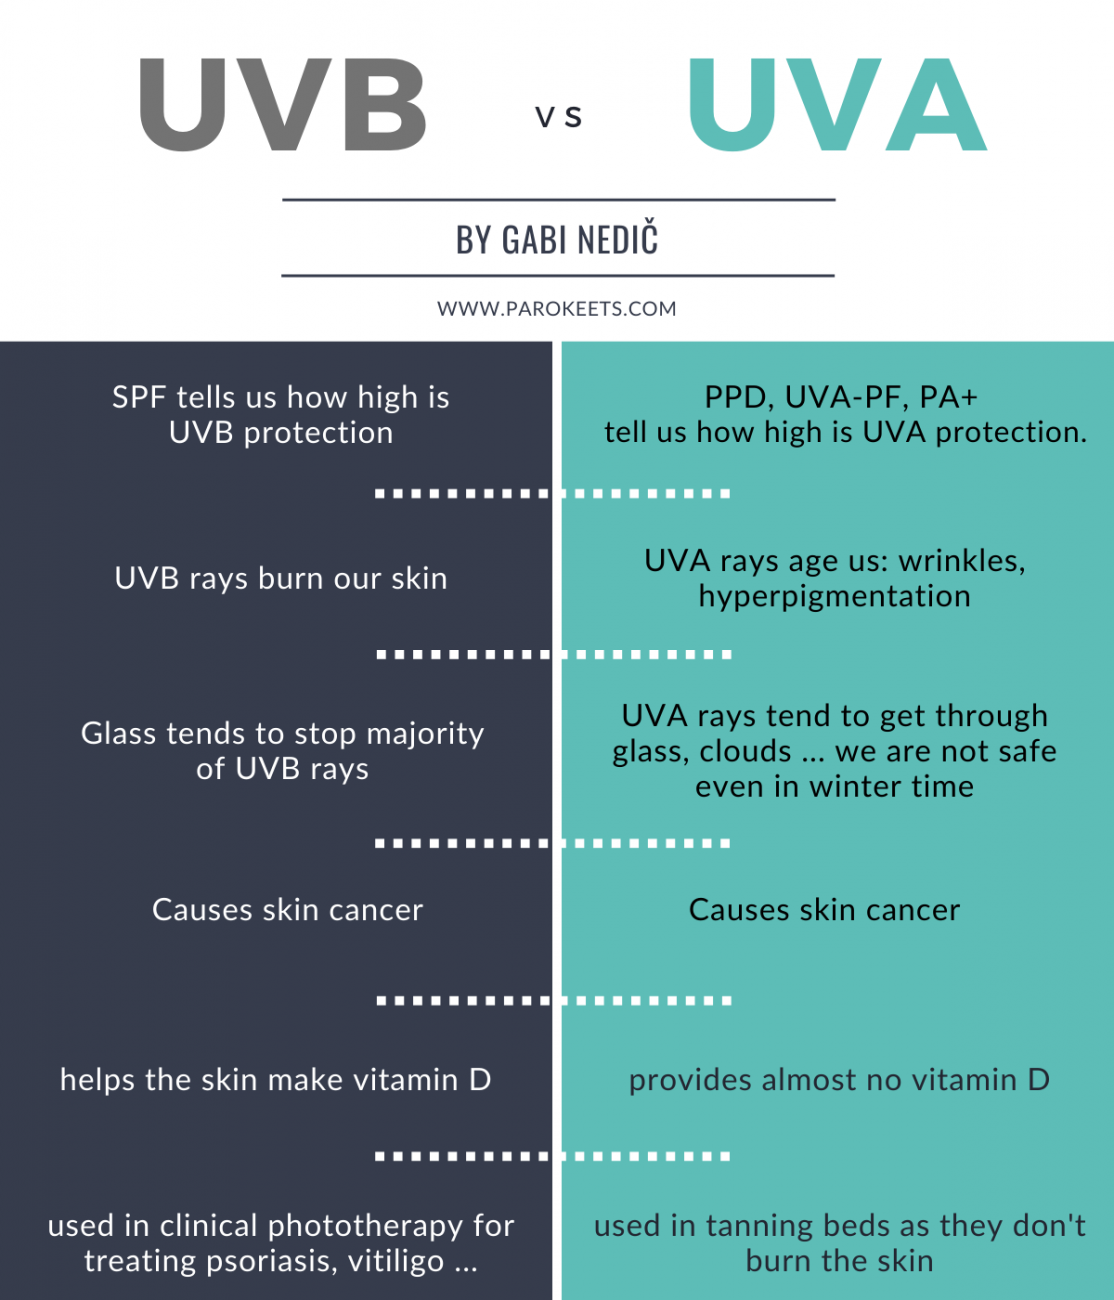 UVB vs UVA